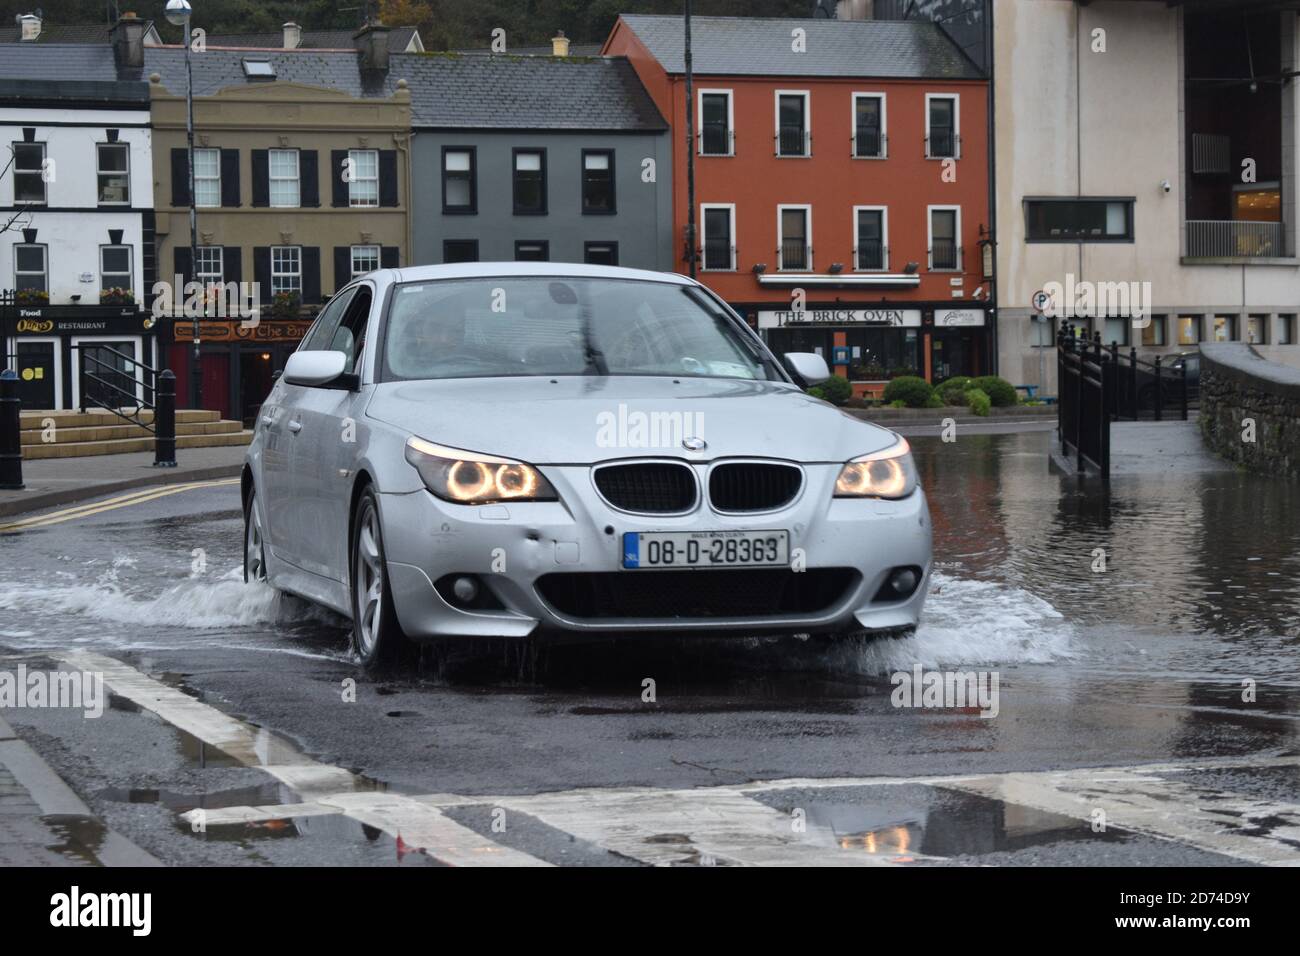 Voiture traversant les eaux inondées de Wolfe Tone Square. Bantry, Co Cork. Irlande. Banque D'Images